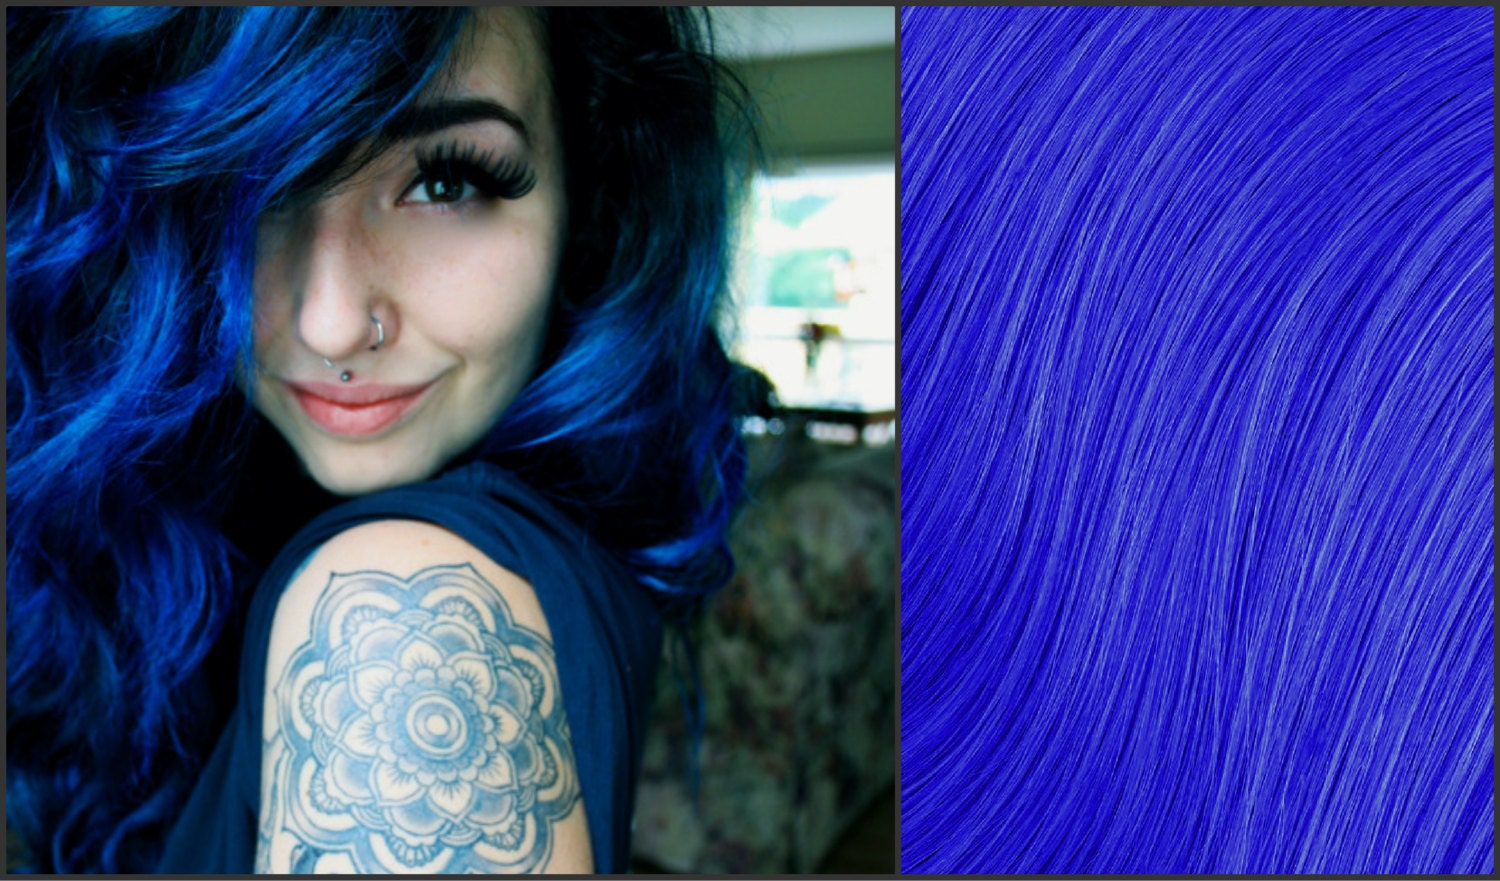 1. "Sapphire Blue Hair Dye" - wide 4